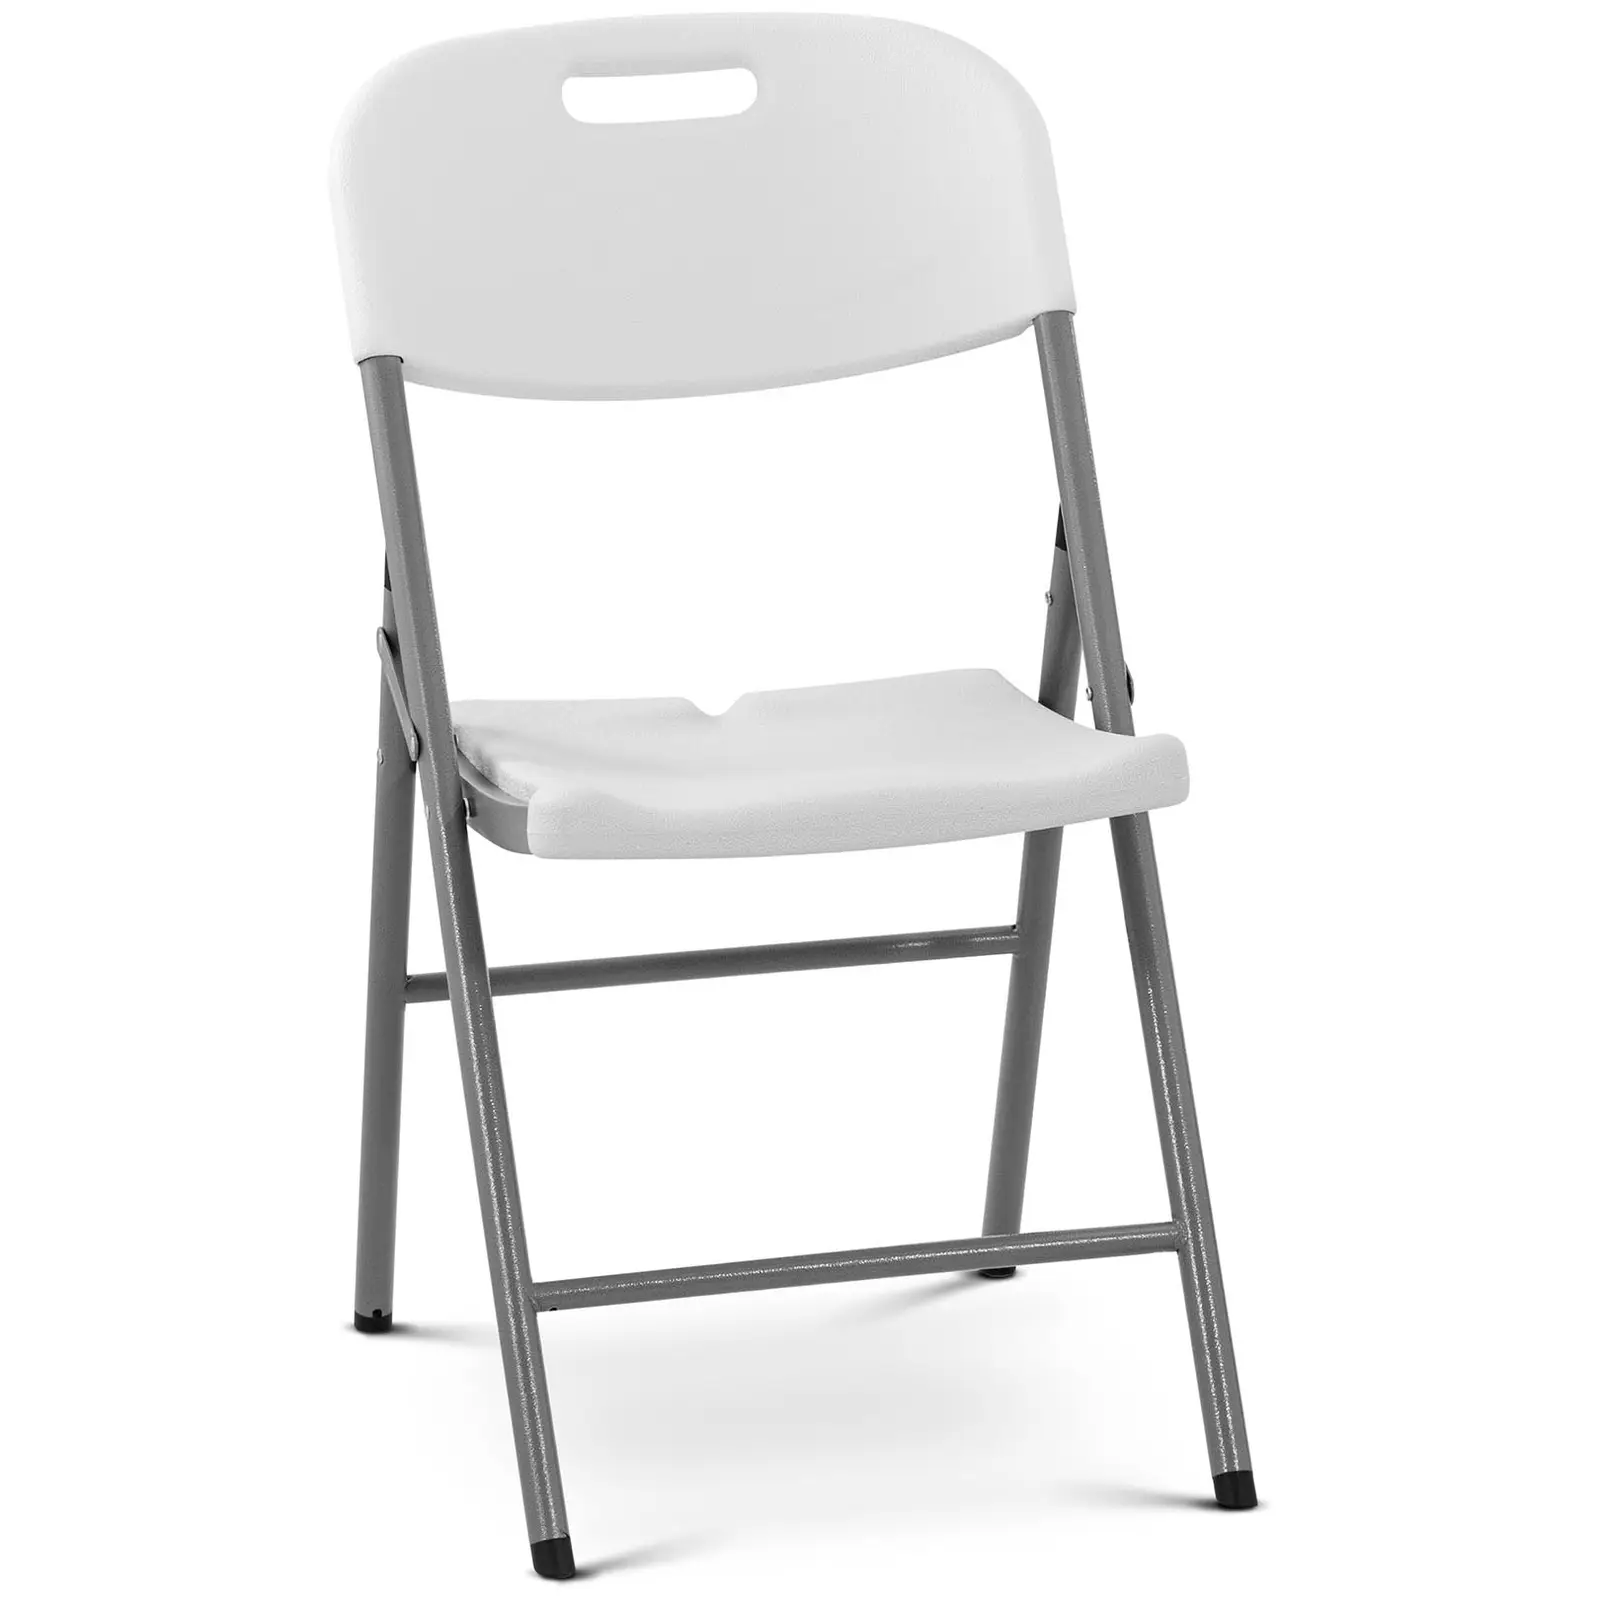 Skládací židle - 180 kg - Royal Catering - plocha pro sezení 40 x 38 cm - bílá